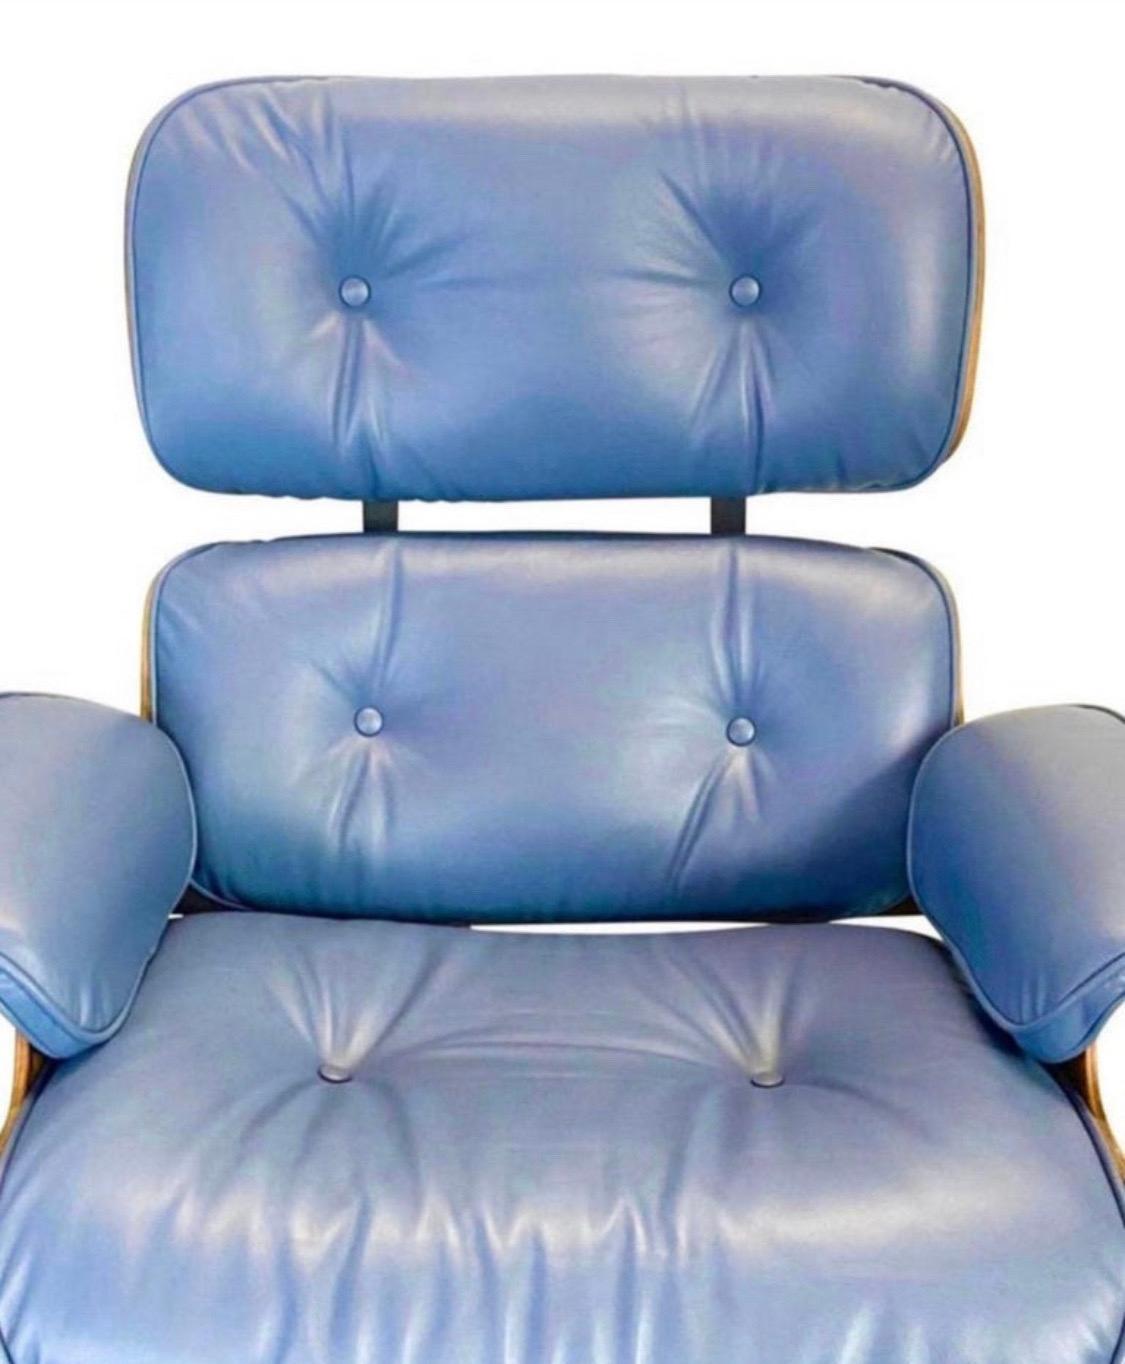 Ein restaurierter, signierter und authentischer Vintage
Herman Miller Eames Lounge Chair und Ottomane aus Rosenholz mit neuen blauen Lederkissen mit glatter und bequemer Oberfläche. Das Holz ist gereinigt und geölt, keine fehlenden Teile oder